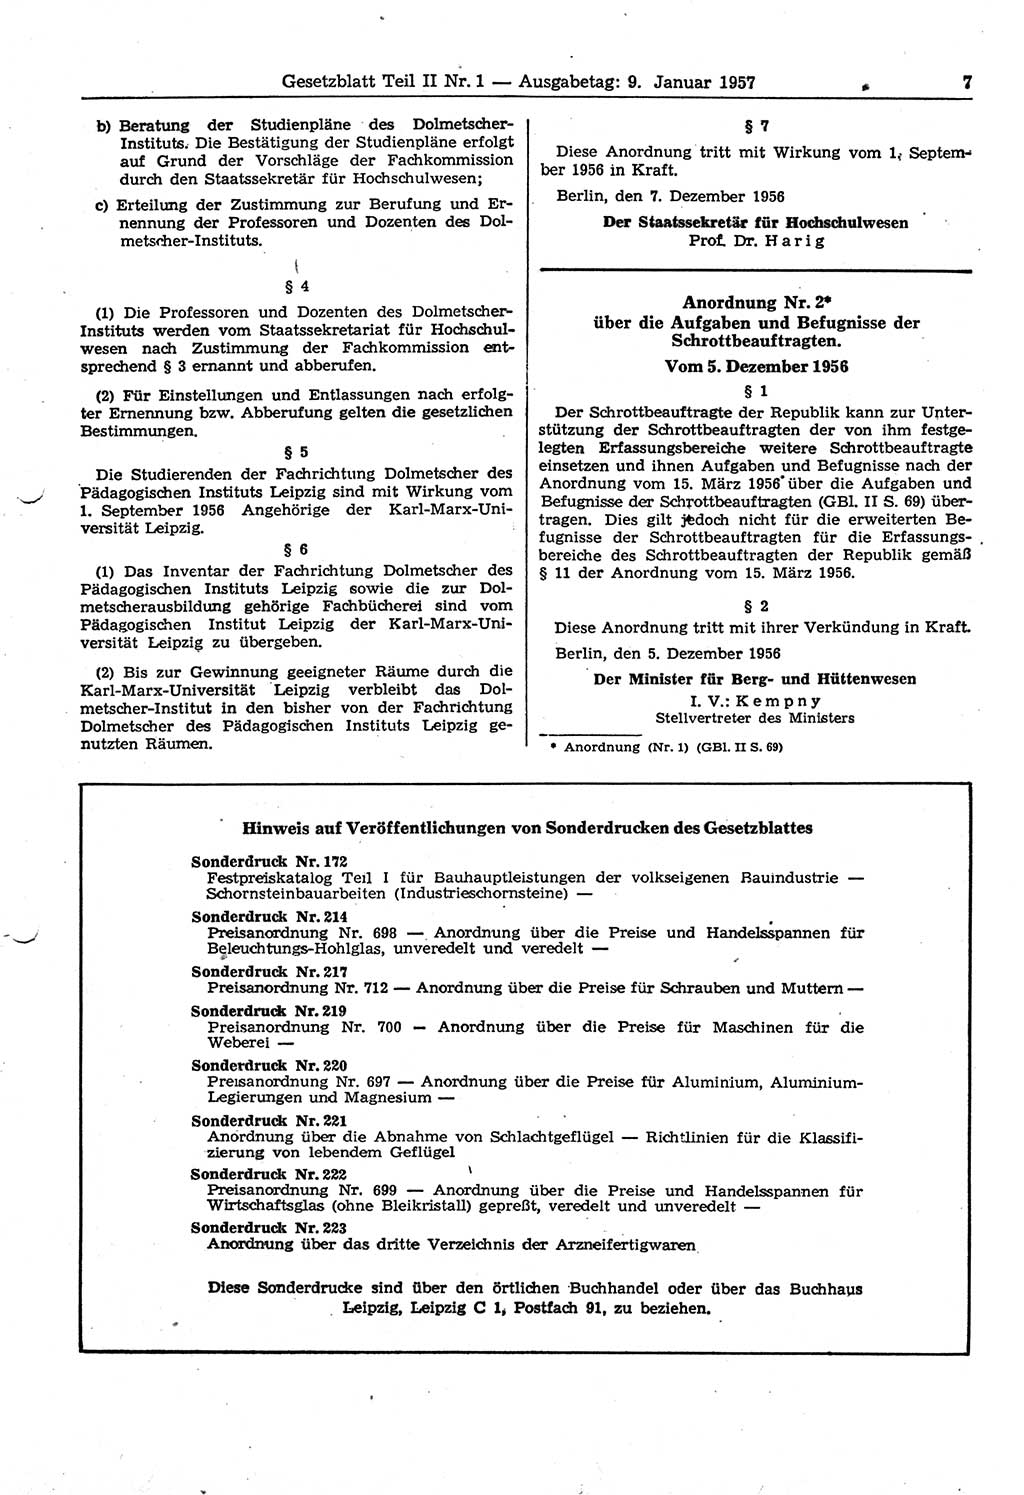 Gesetzblatt (GBl.) der Deutschen Demokratischen Republik (DDR) Teil ⅠⅠ 1957, Seite 7 (GBl. DDR ⅠⅠ 1957, S. 7)